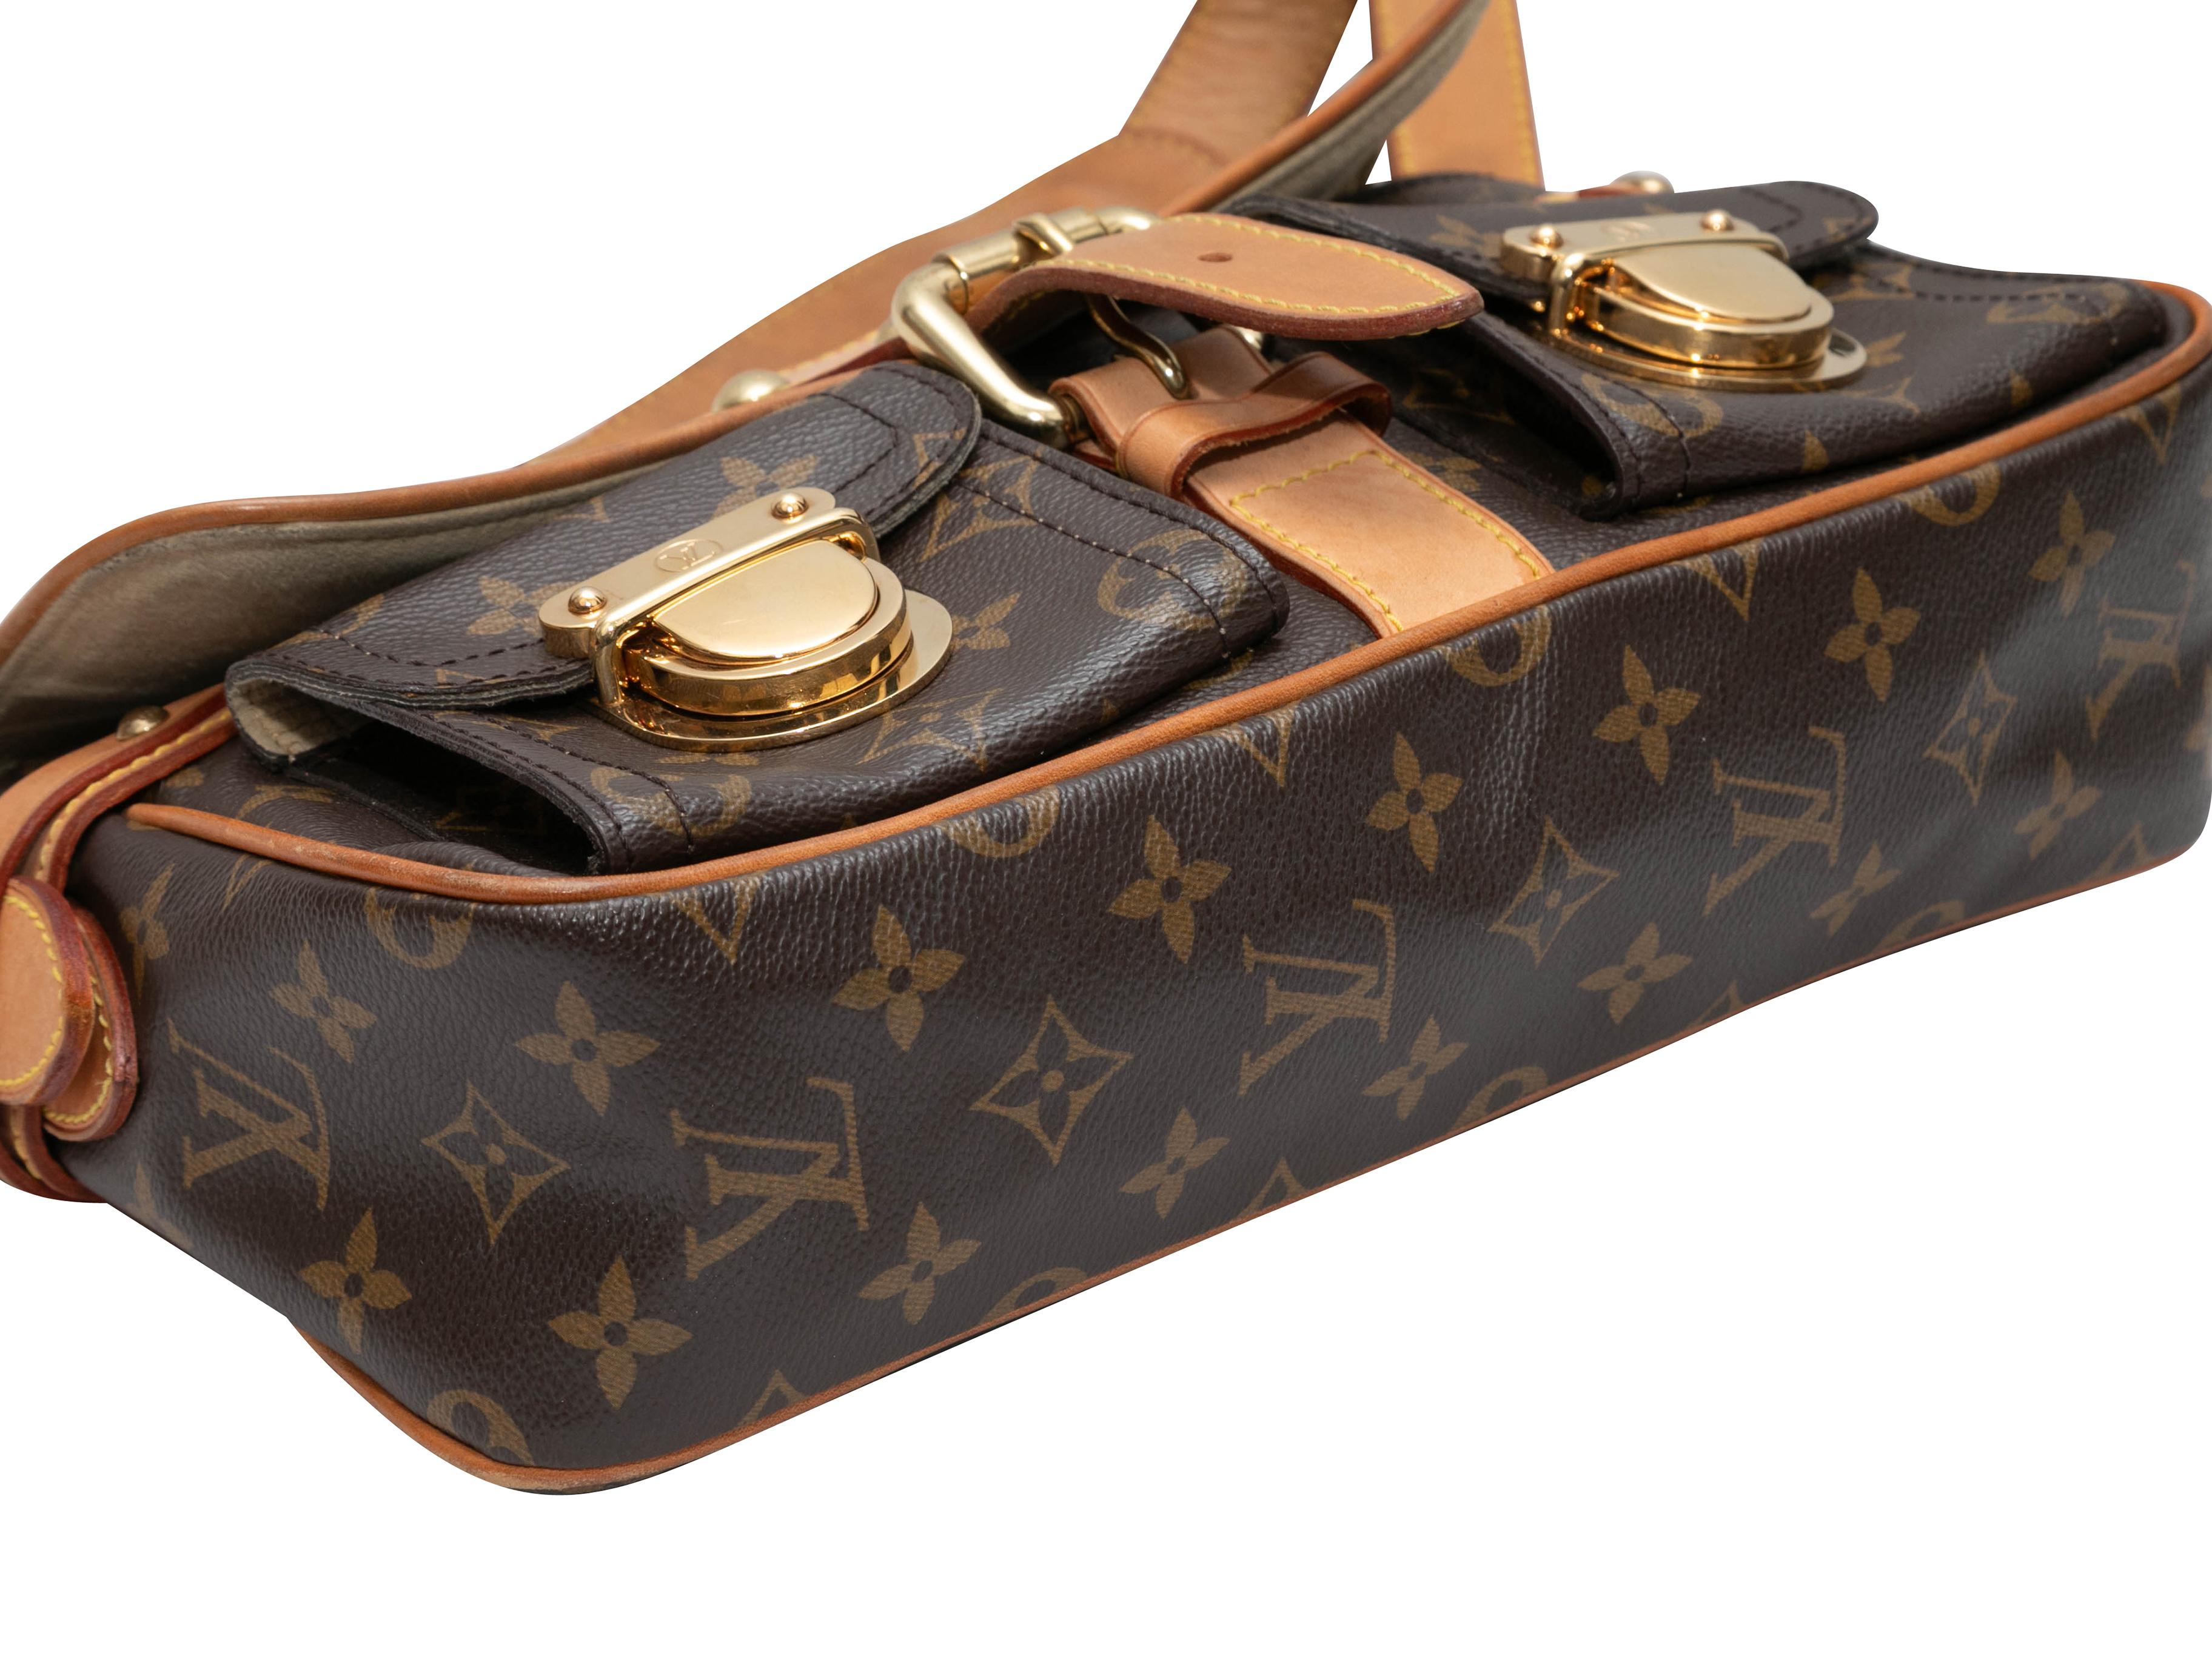 Braune Louis Vuitton Monogram Hudson PM Tasche. Die Hudson PM Bag hat einen Korpus aus beschichtetem Canvas mit Monogrammen, Lederbesatz, goldfarbene Beschläge, zwei Vordertaschen mit Push-Lock-Verschluss, einen einzelnen Schulterriemen und einen